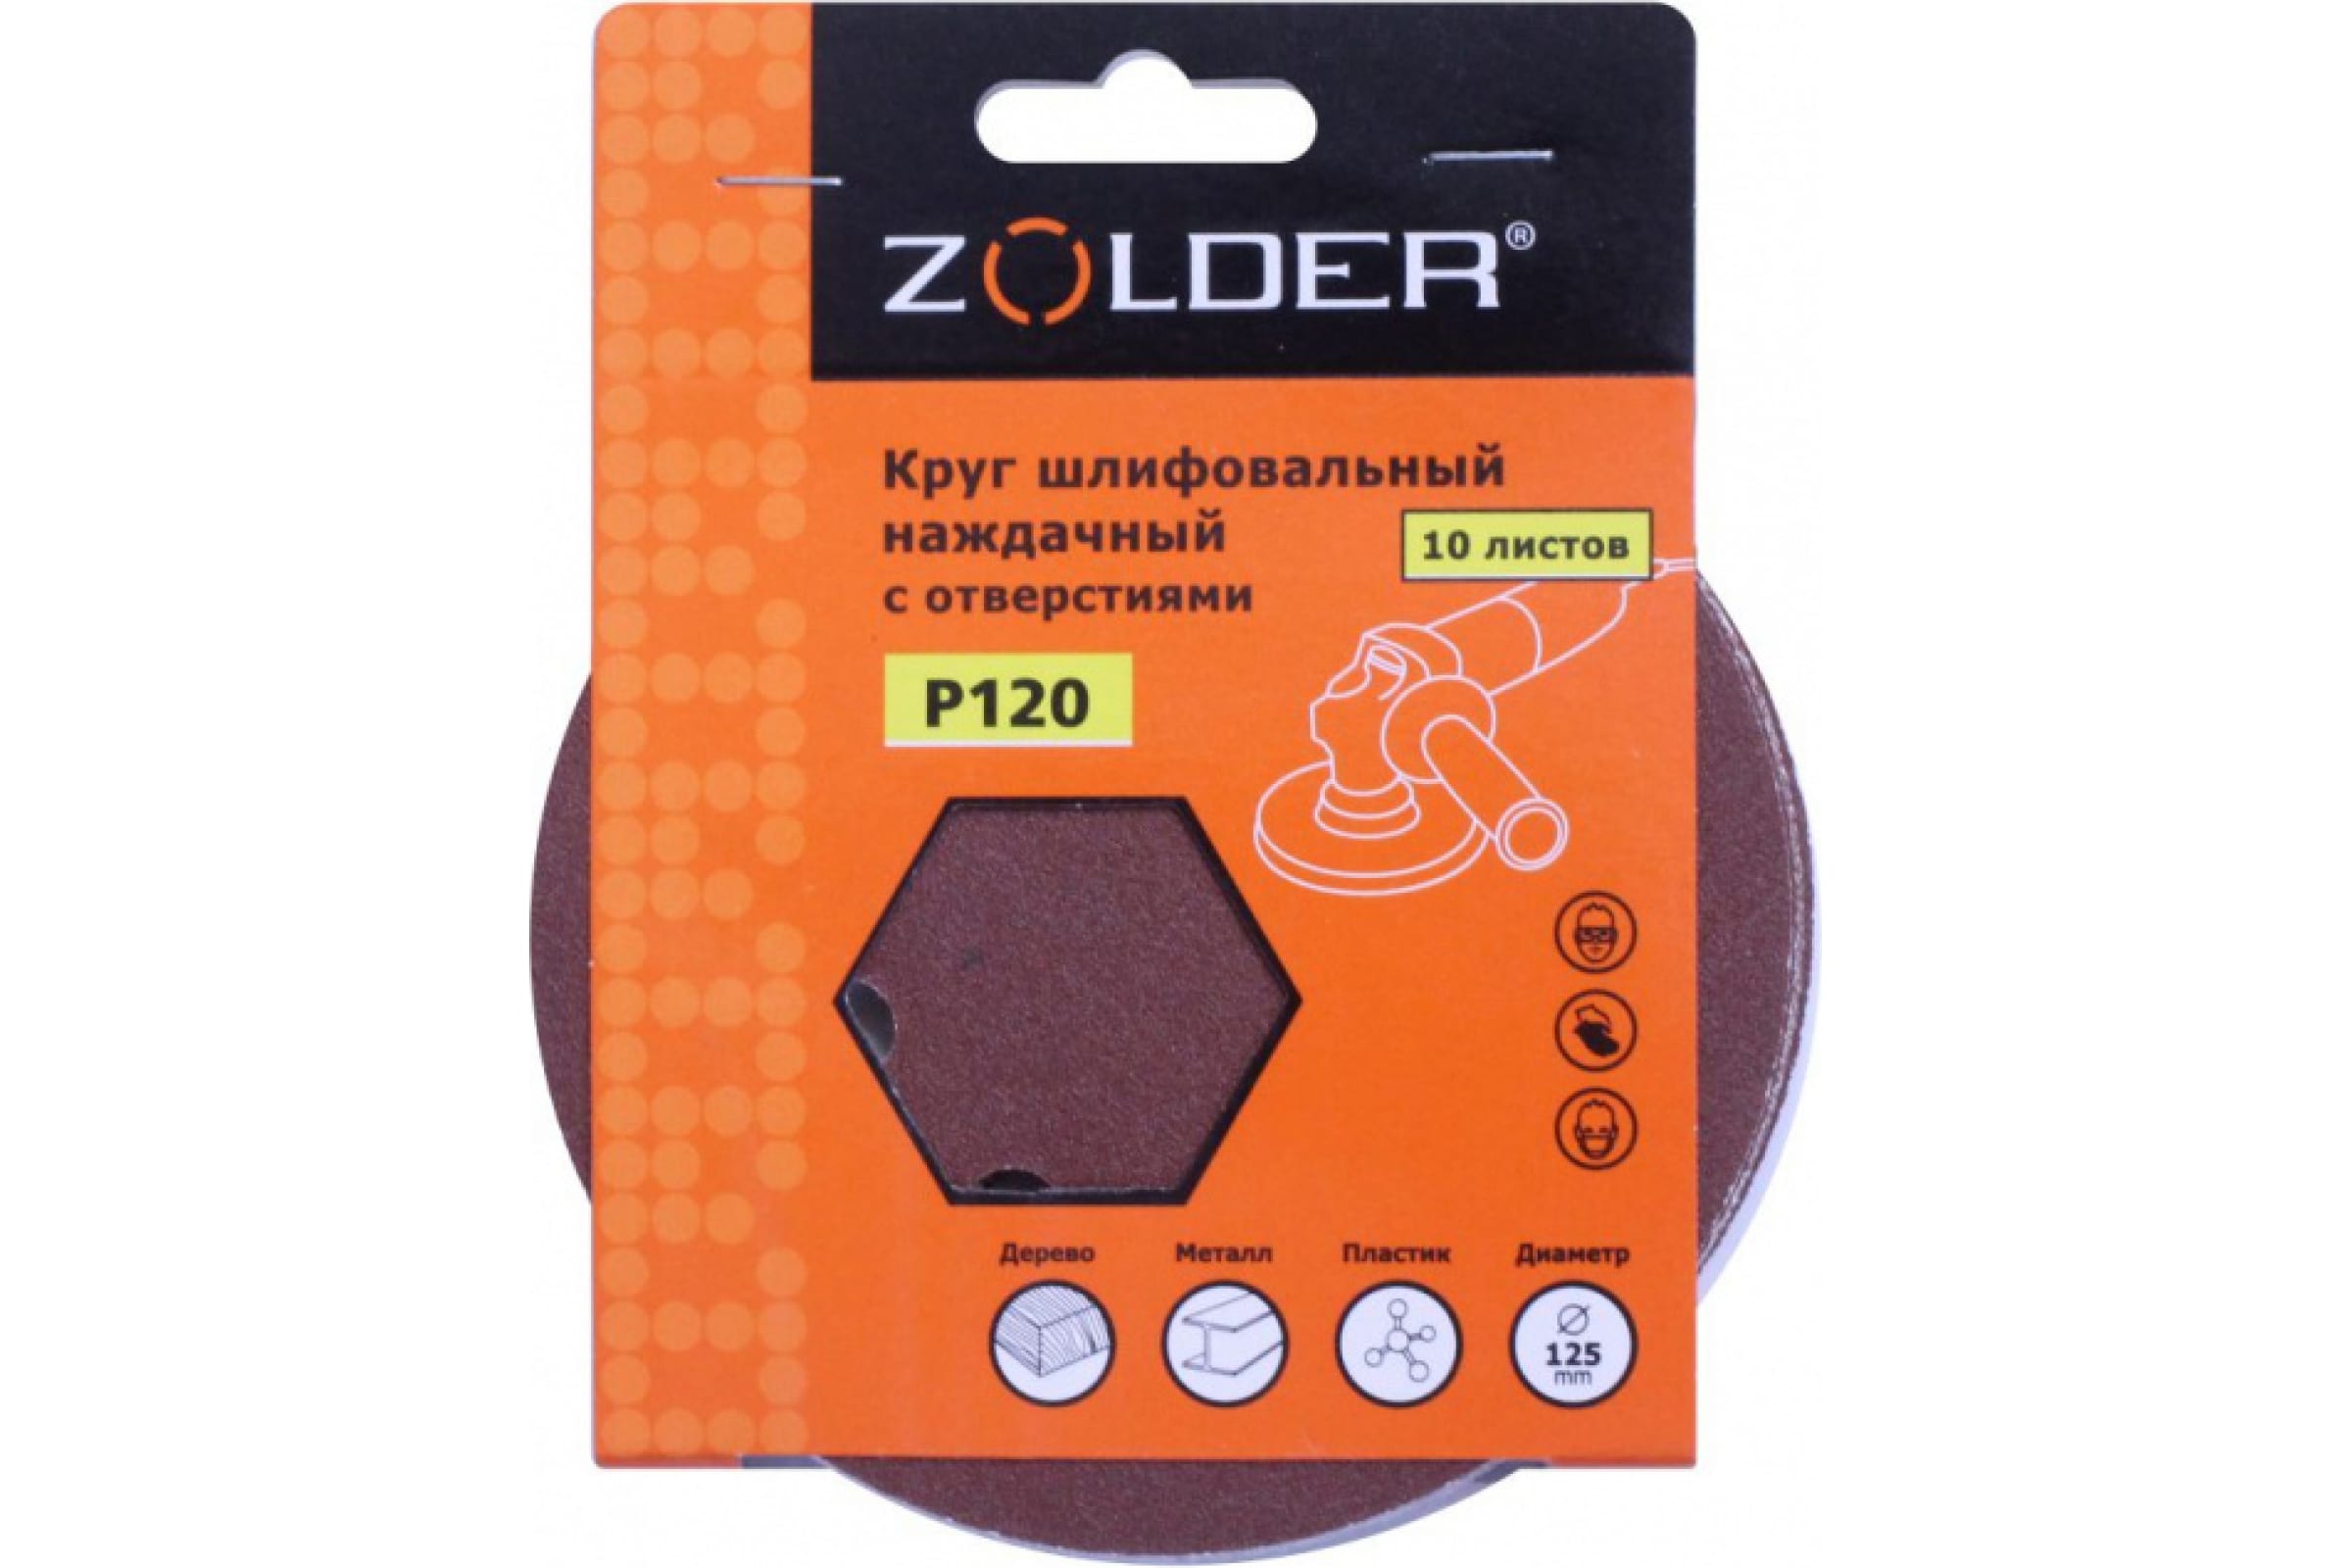 ZOLDER Круги шлифовальные наждачные 10шт/ P120, 125 мм, 8 отверстий, липучка / Z-108-1208